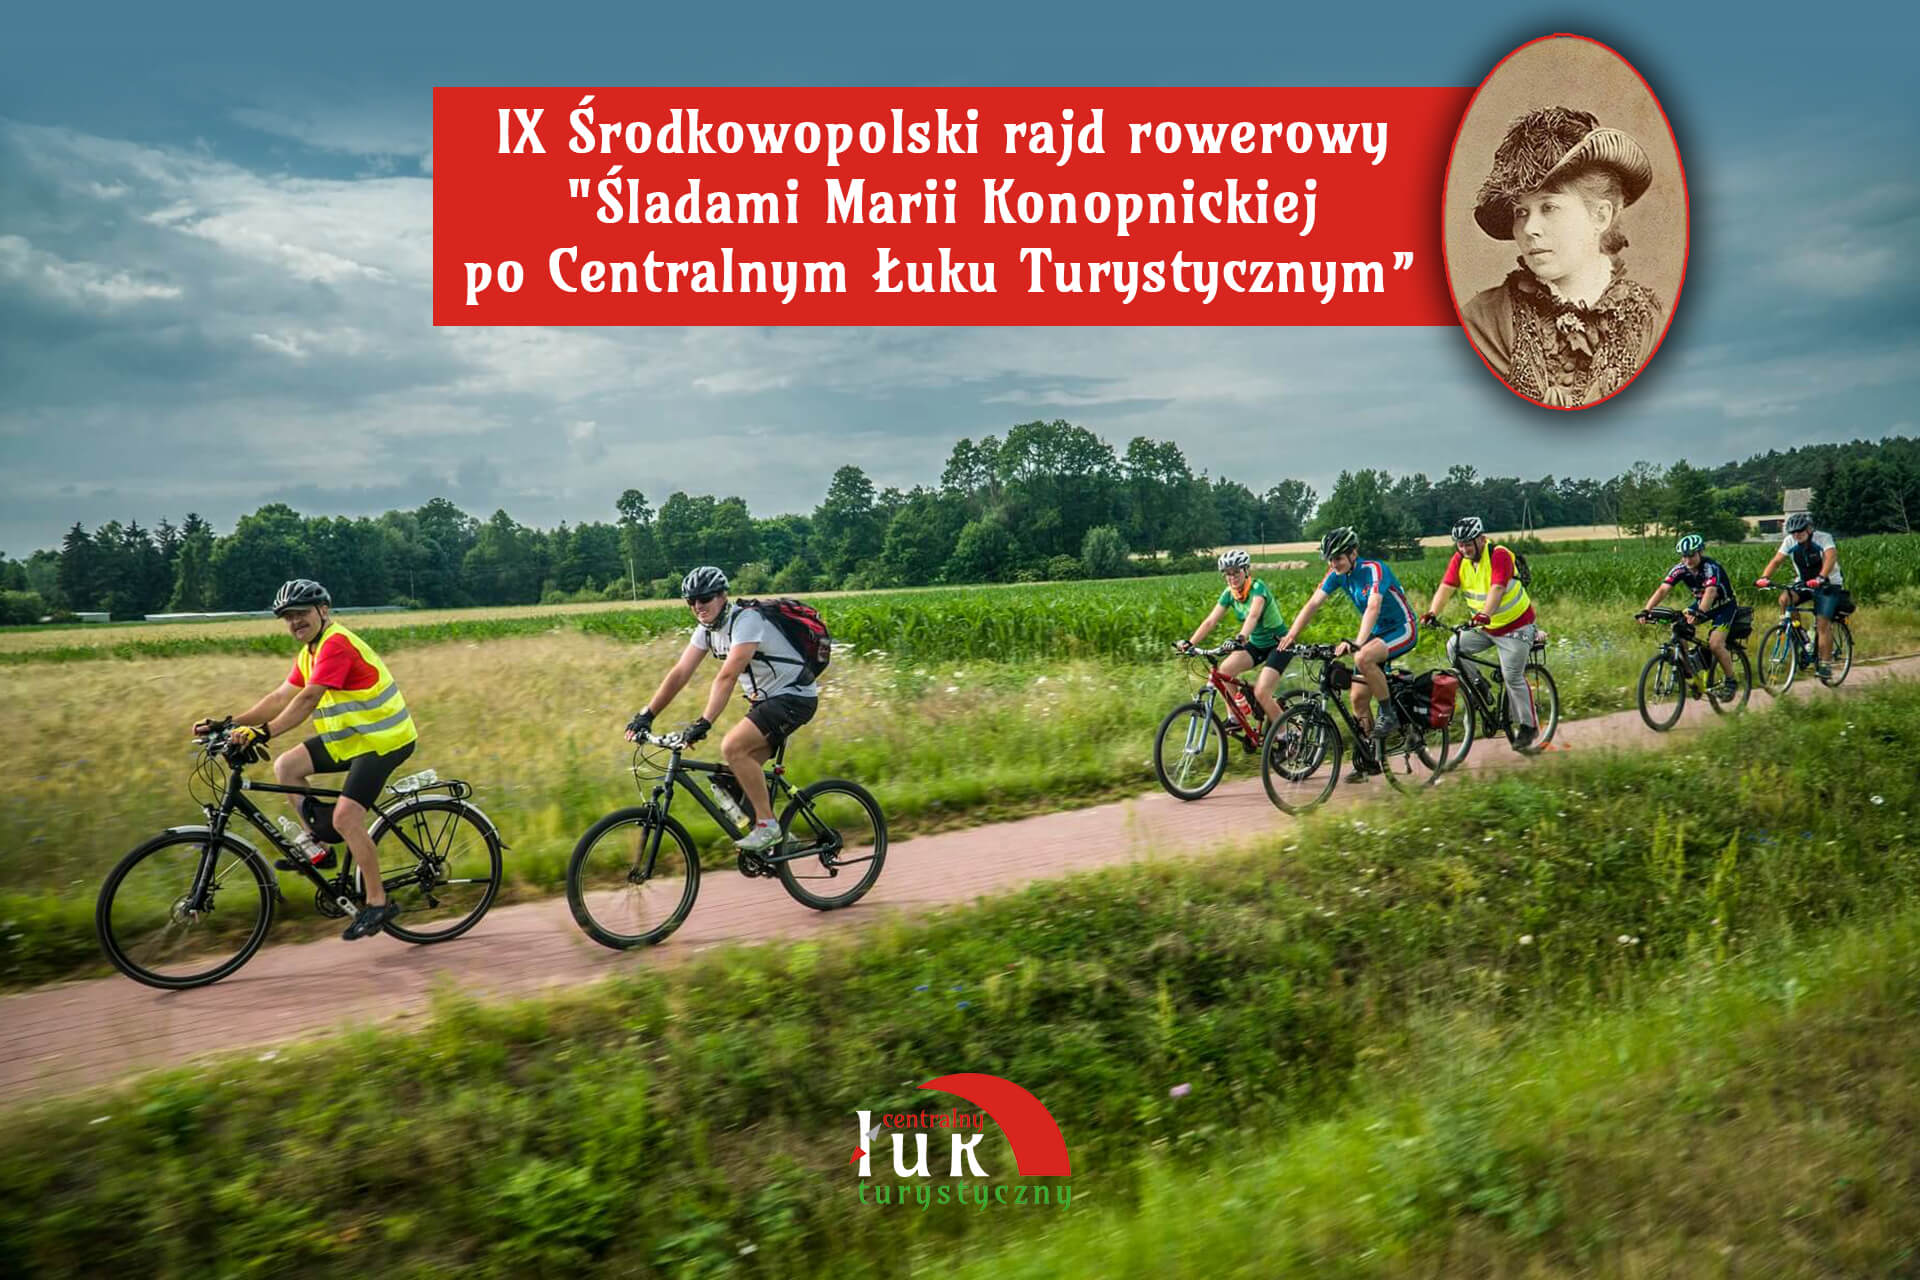 IX Środkowopolski rajd rowerowy CŁT